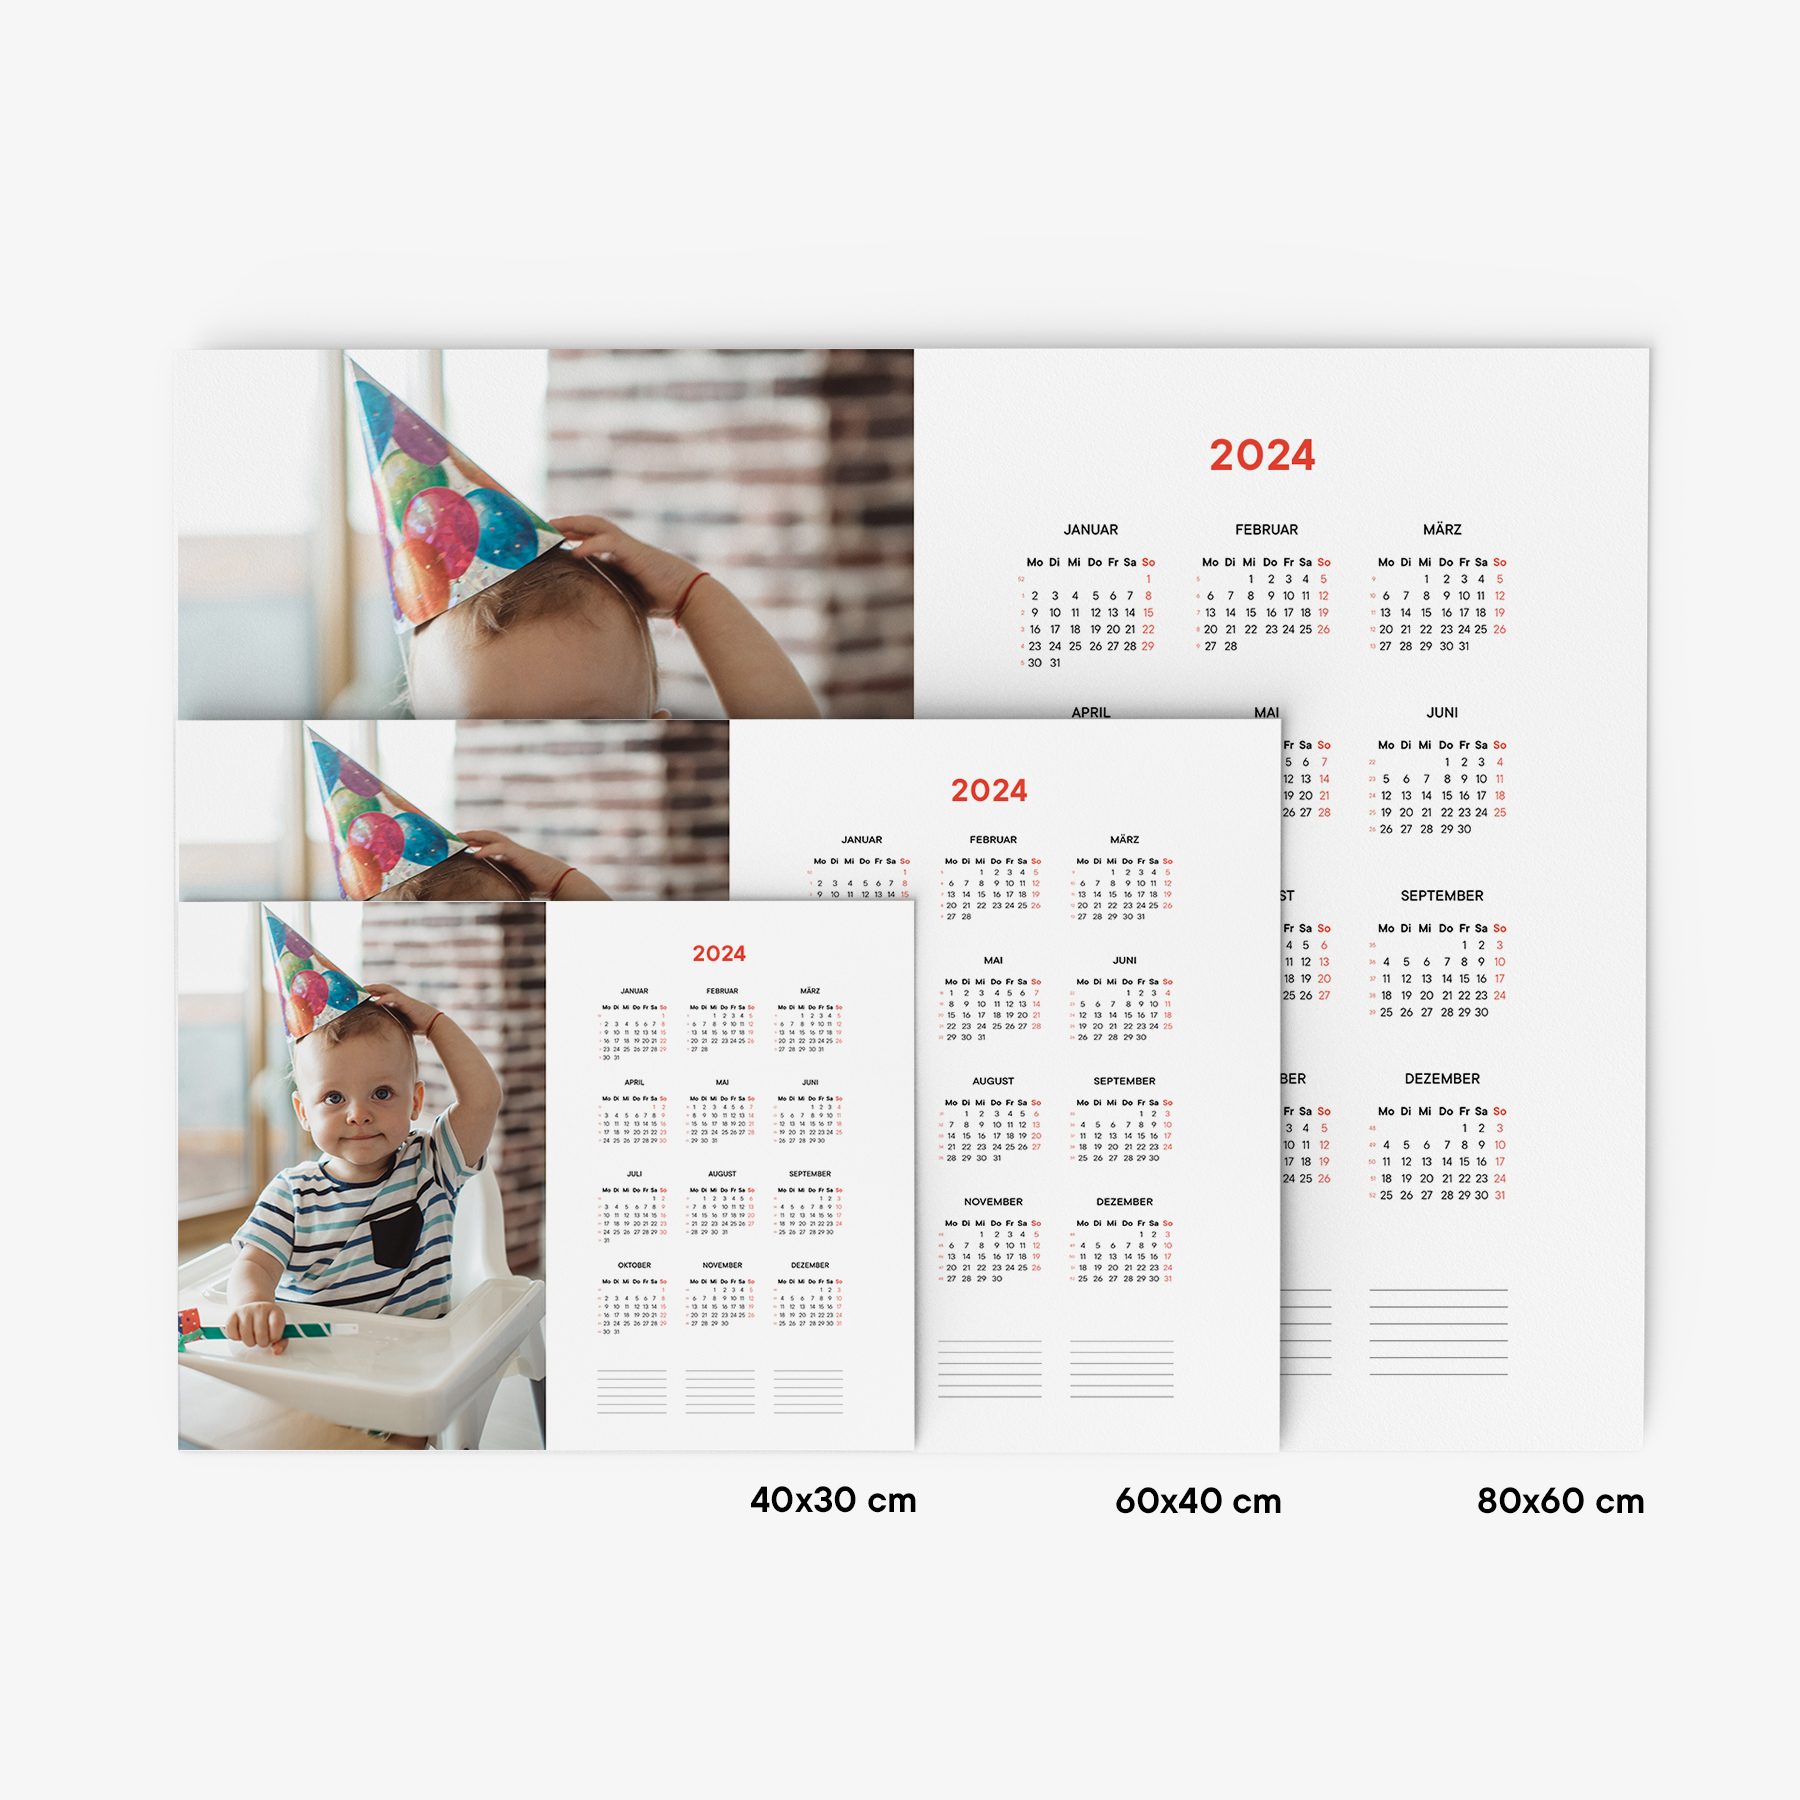 Gestalte persönliche Sticker für deinen Kalender